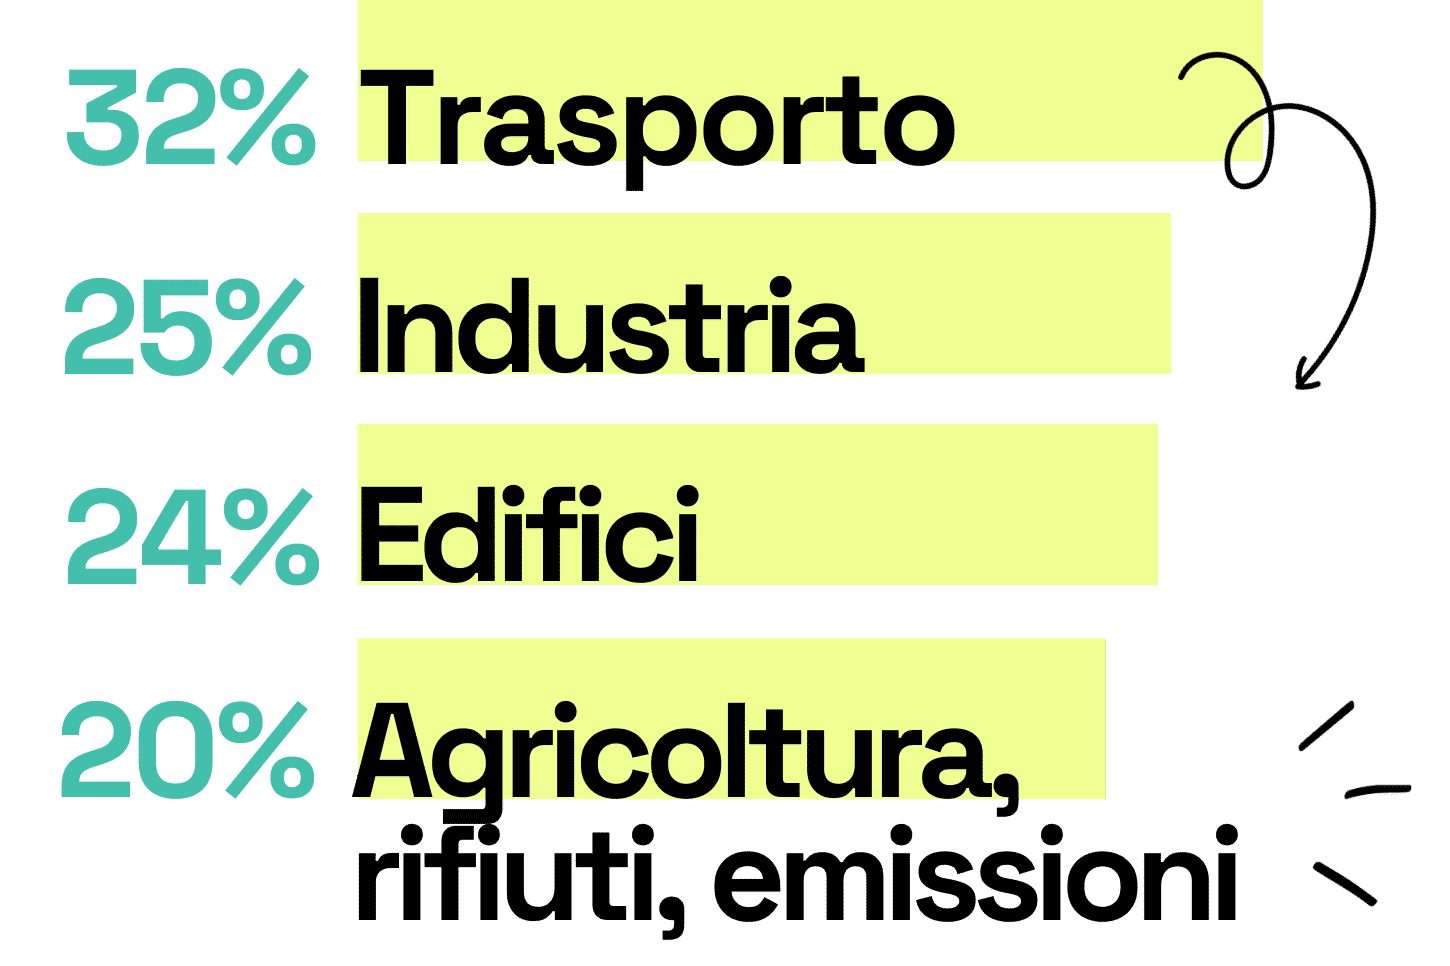 Di emissioni di gas a effetto serra in Svizzera: 32% trasporto, 25% industria, 24% edifici e 20% agricoltura, rifiuti, emissioni.